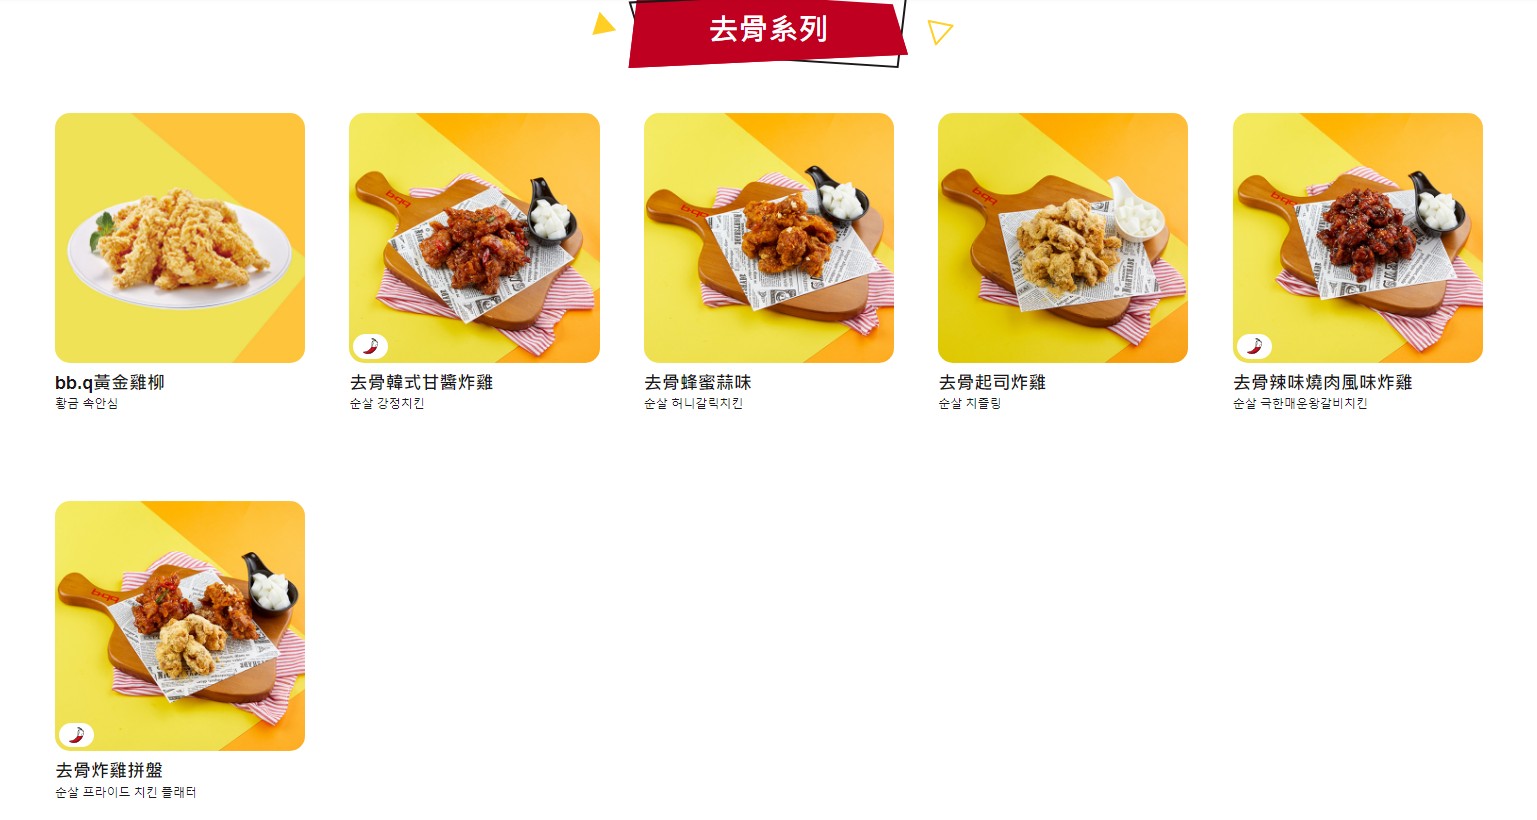 鬼怪炸雞韓式炸雞bb.q CHICKEN台北旗艦店!皮脆多汁、超嫩雞胸，菜單套餐